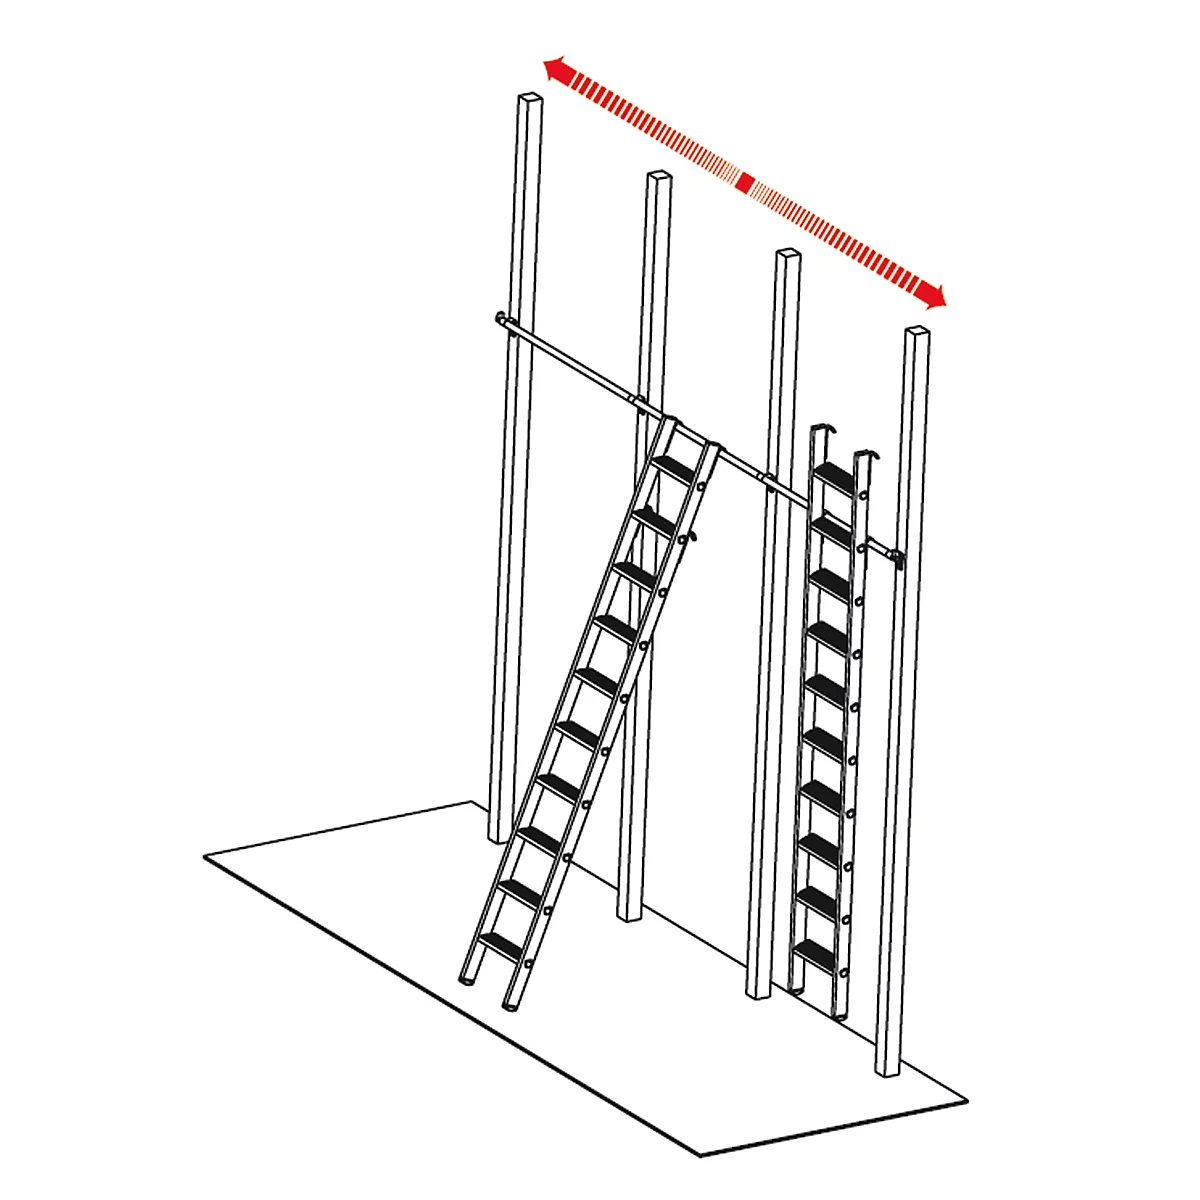 Escalera para estanterías KRAUSE, aluminio, con 2 pares de ganchos de suspensión/sujeción, 10 escalones